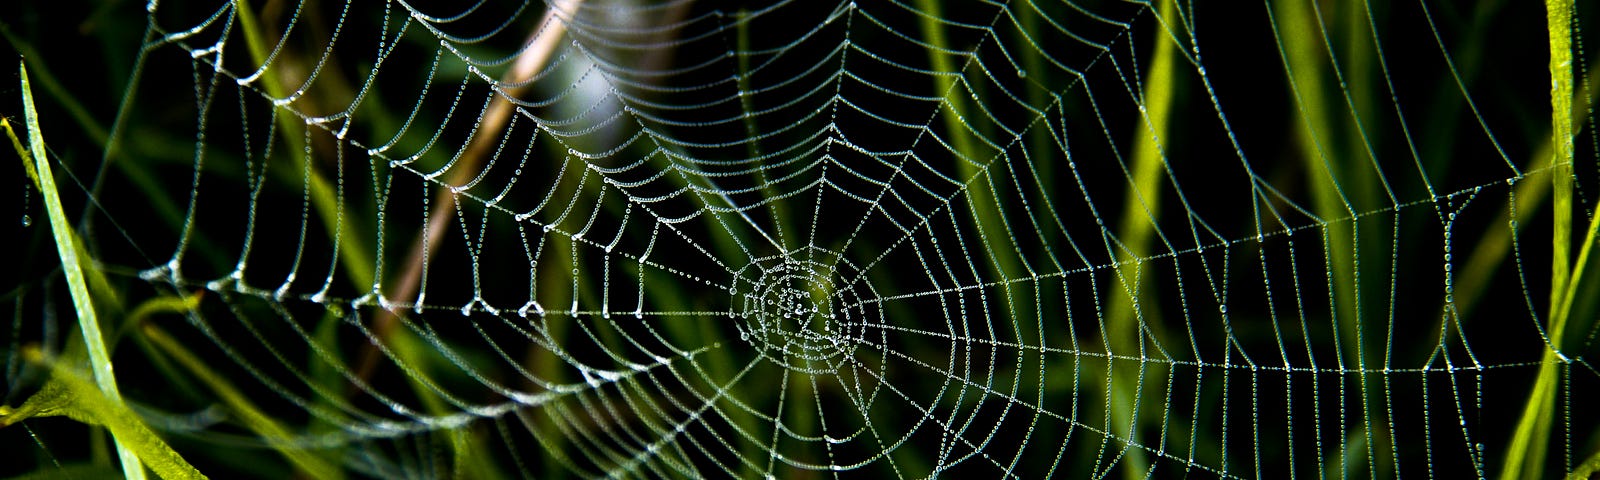 A spiderweb in the grass.